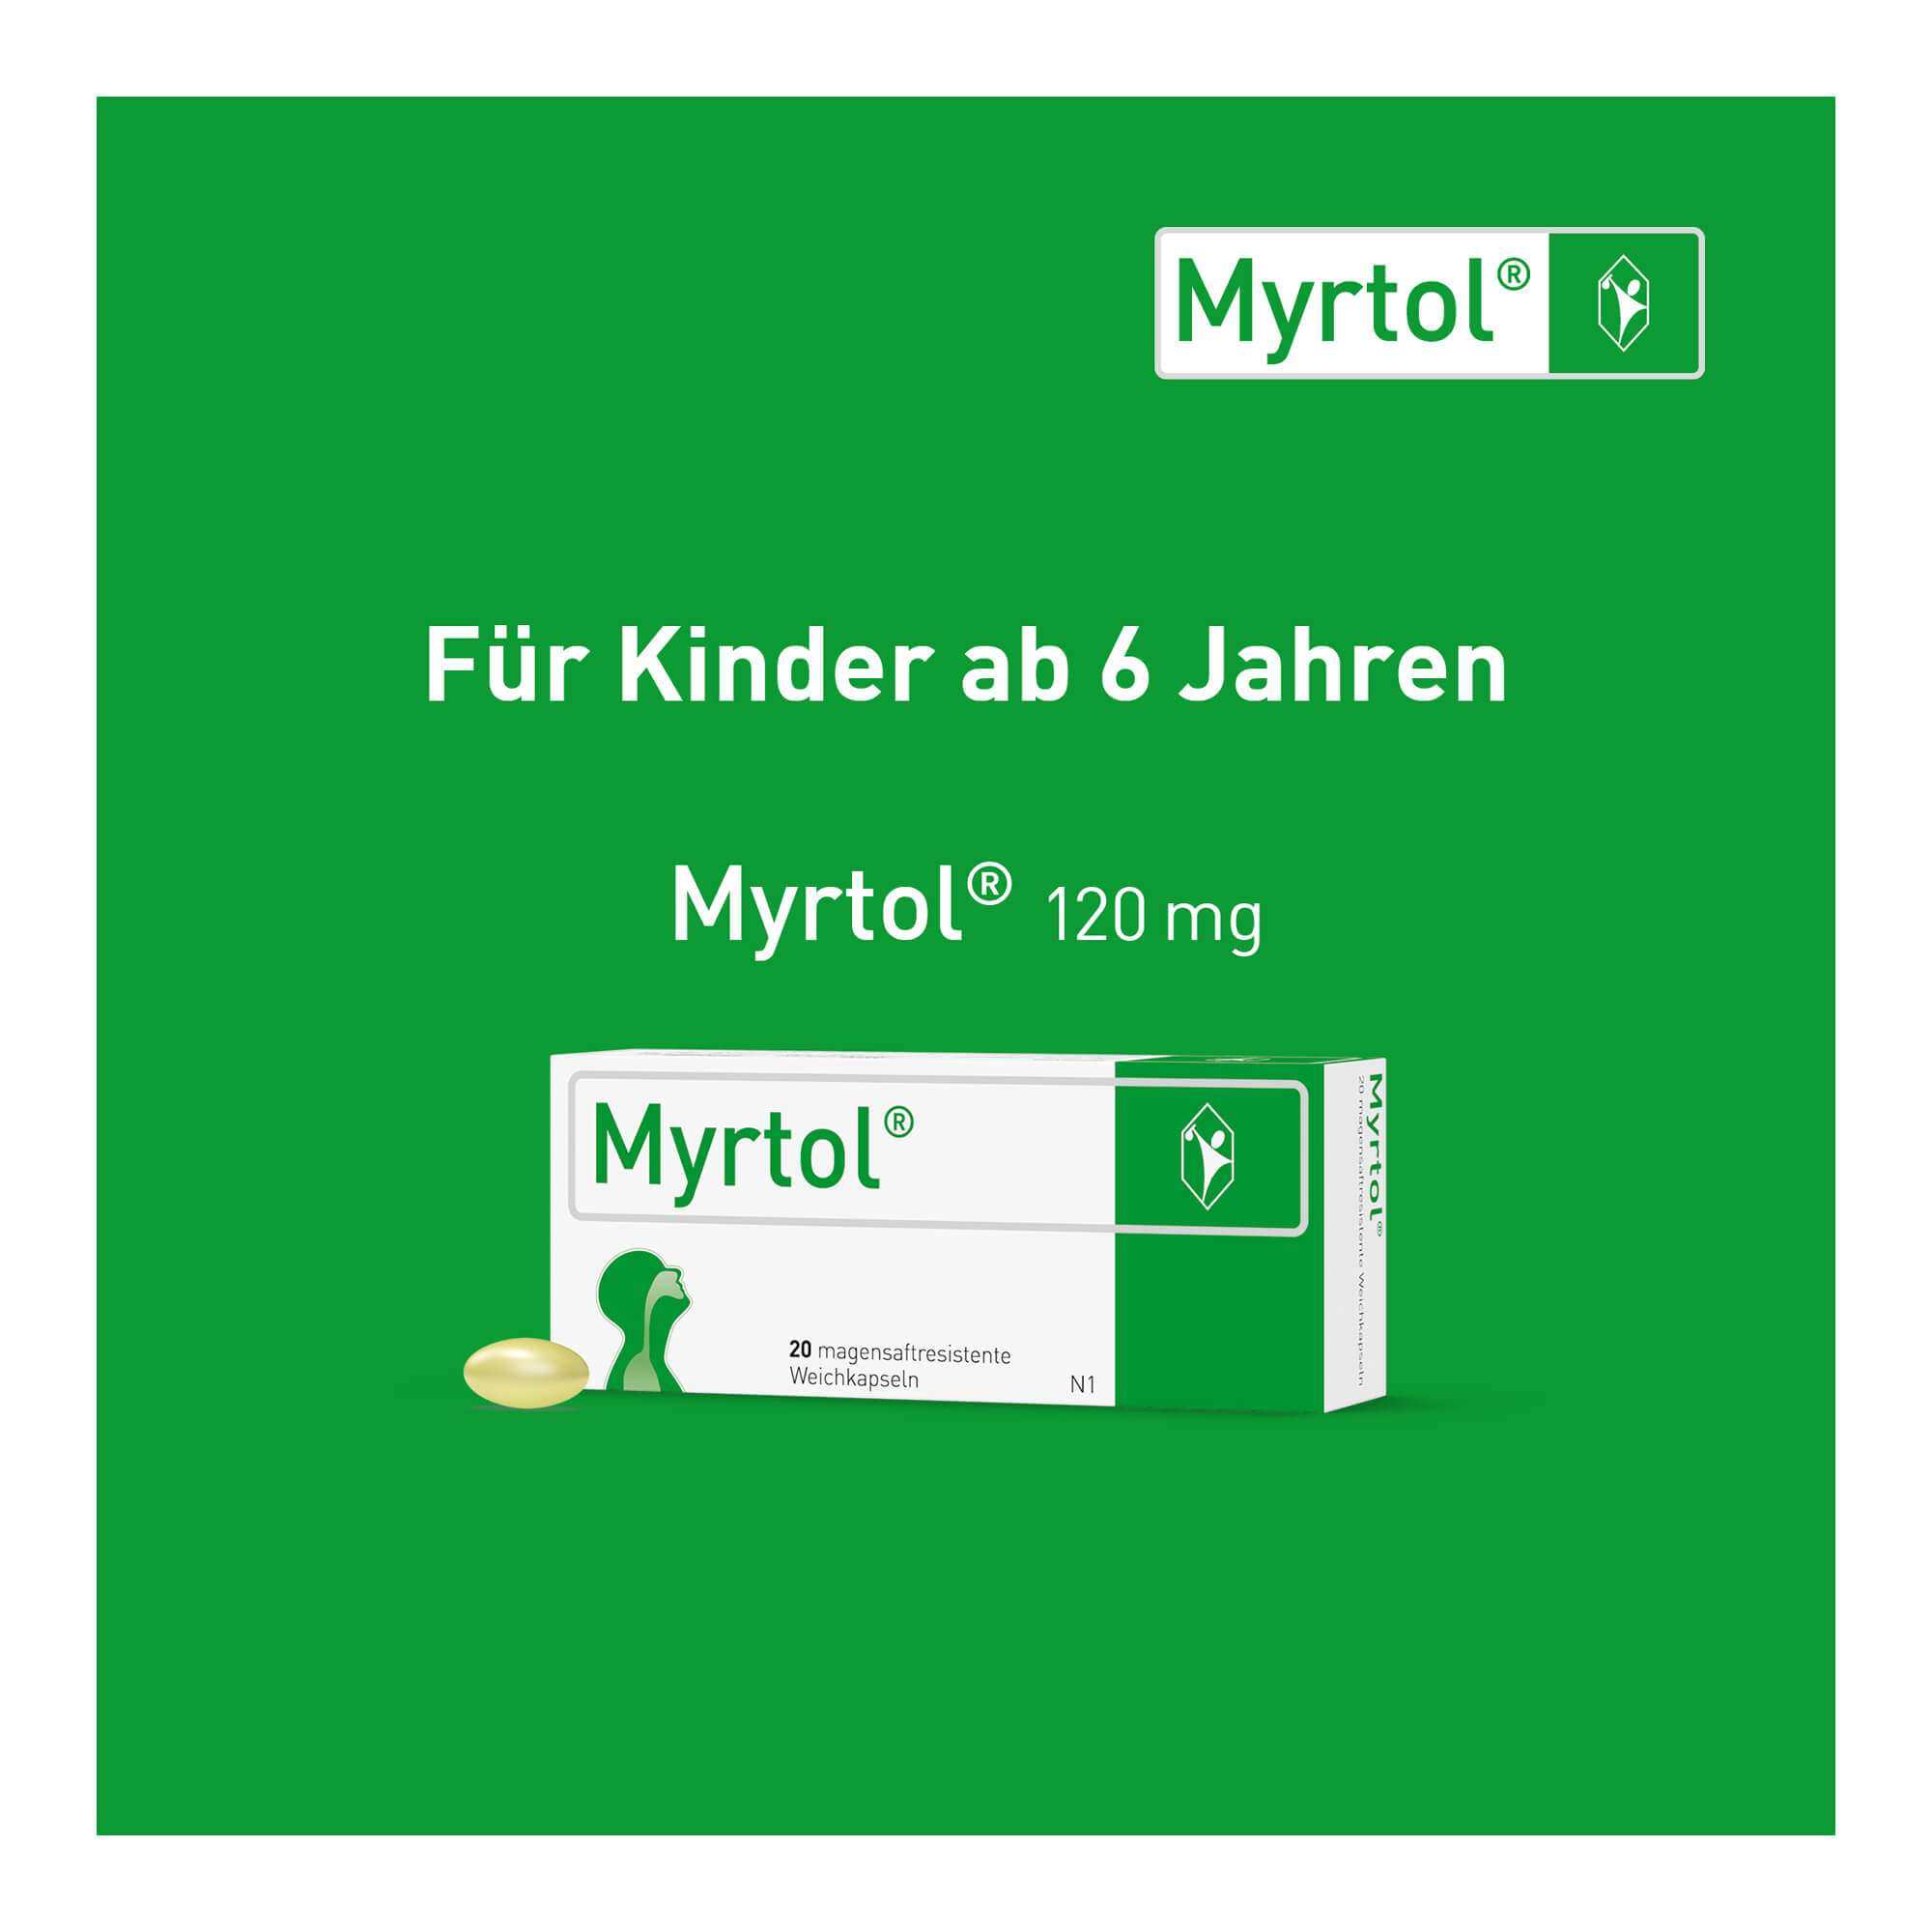 Grafik Myrtol magensaftresistente Weichkapseln Für Kinder ab 6 Jahren